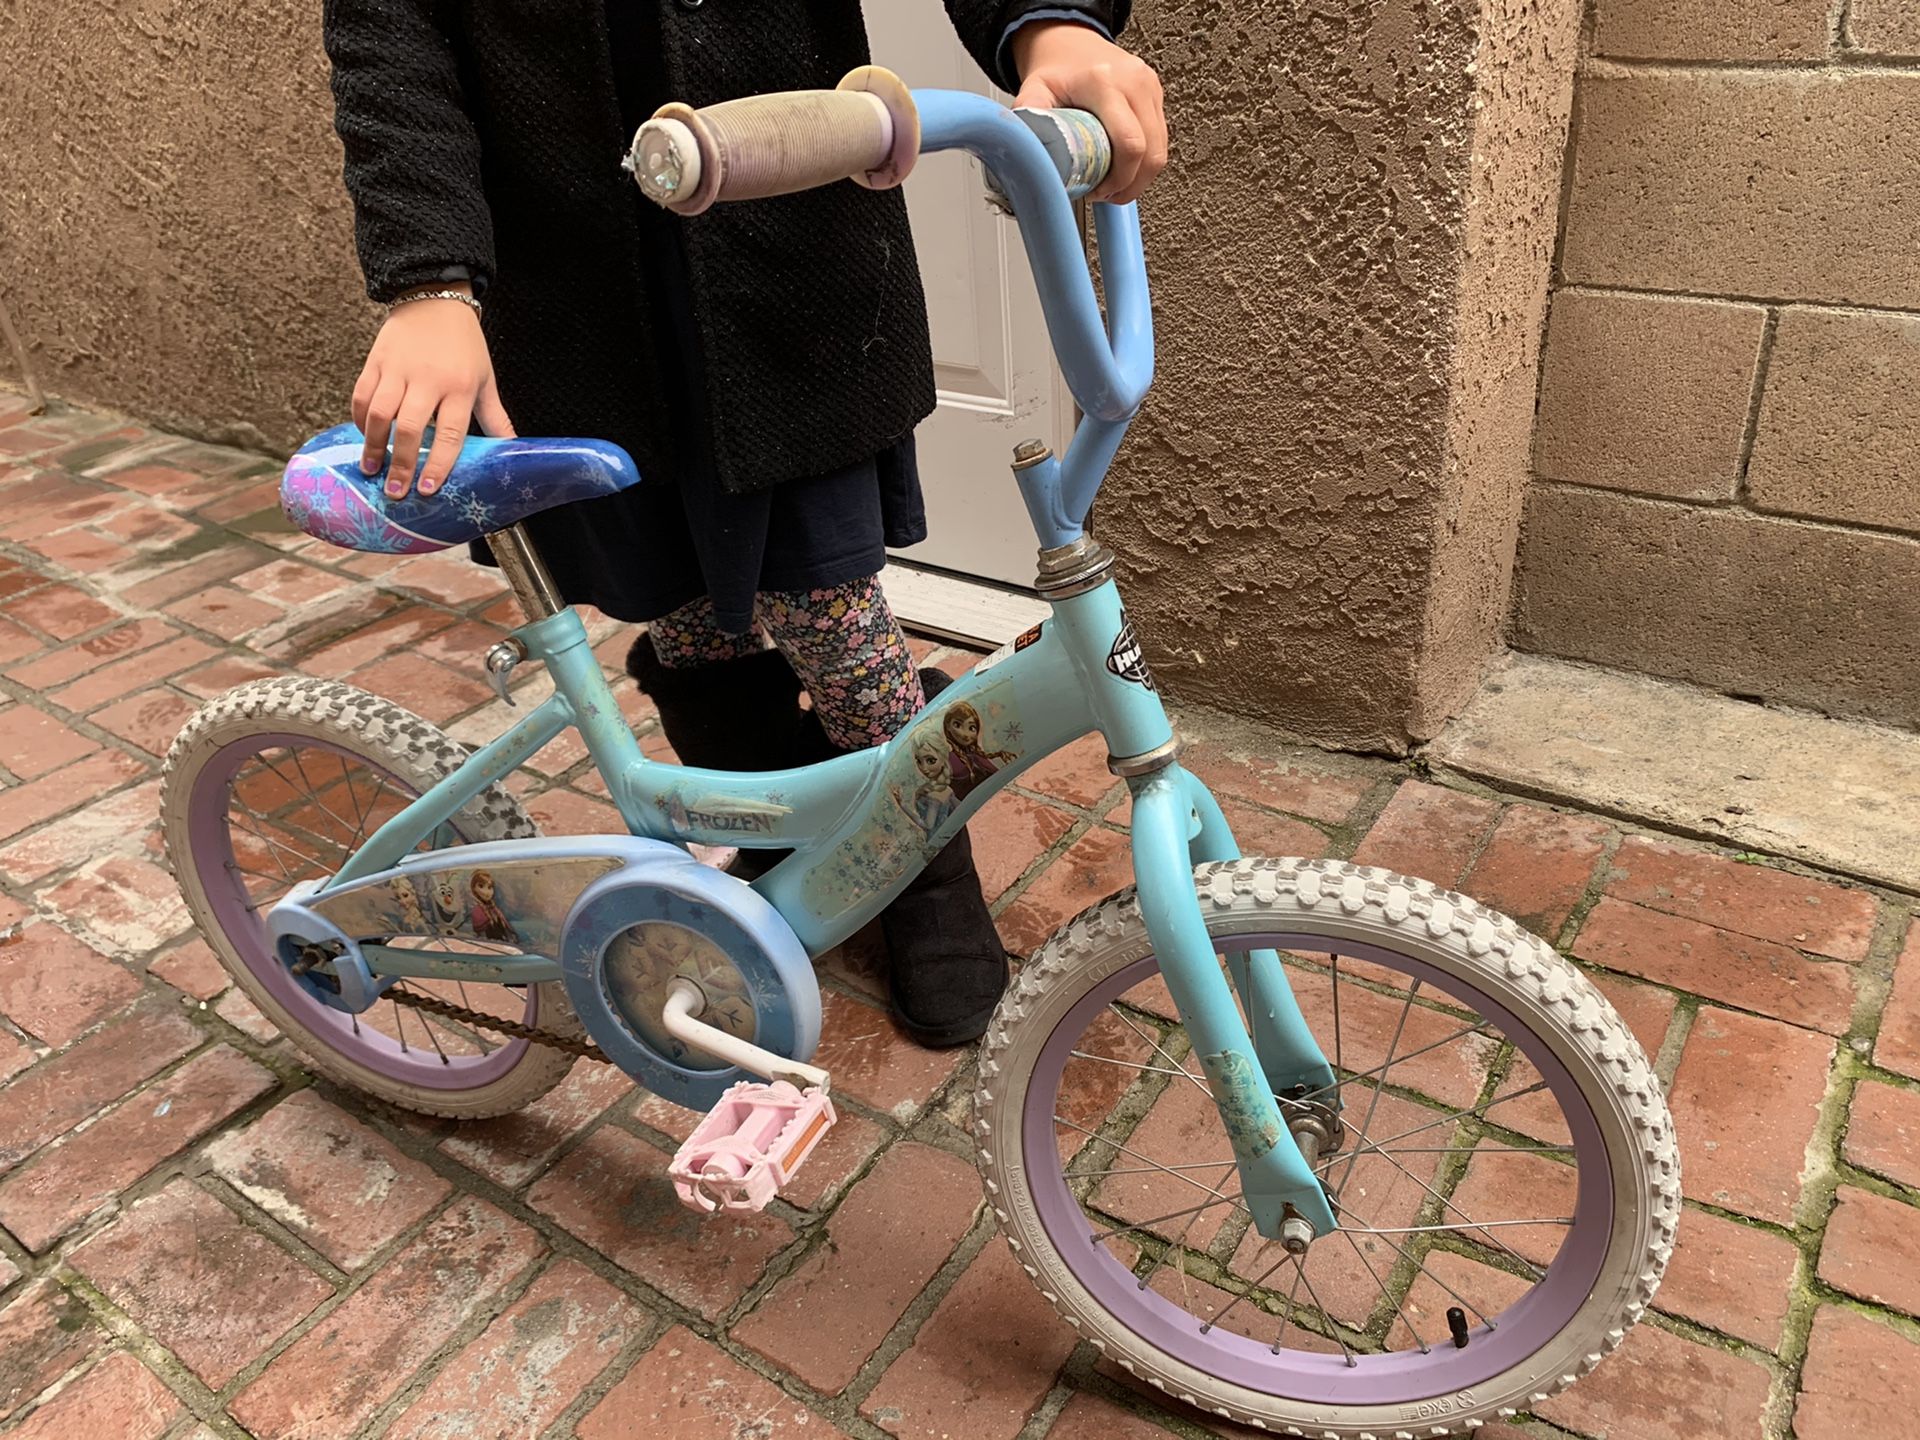 Kid’s bike (Frozen) with helmet (Olaf)